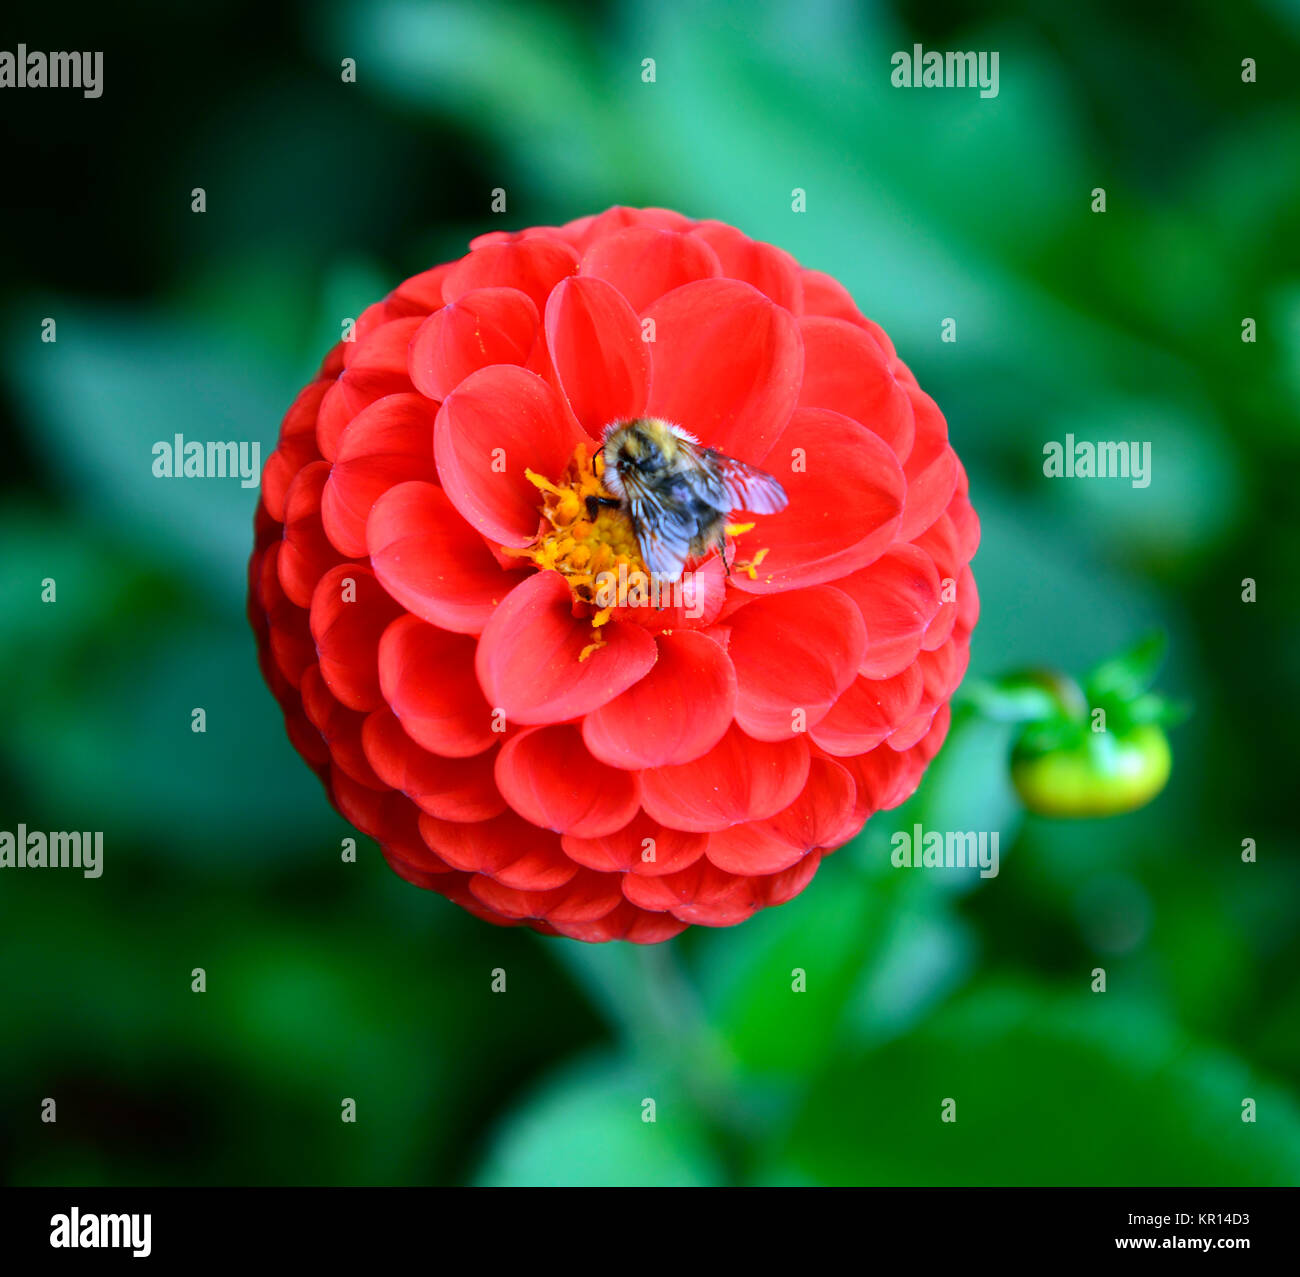 Dahlia Kochelsee,pompon,rosso,profondo rosso,fiore,fiori,fioritura,dalie,RM Floral Foto Stock